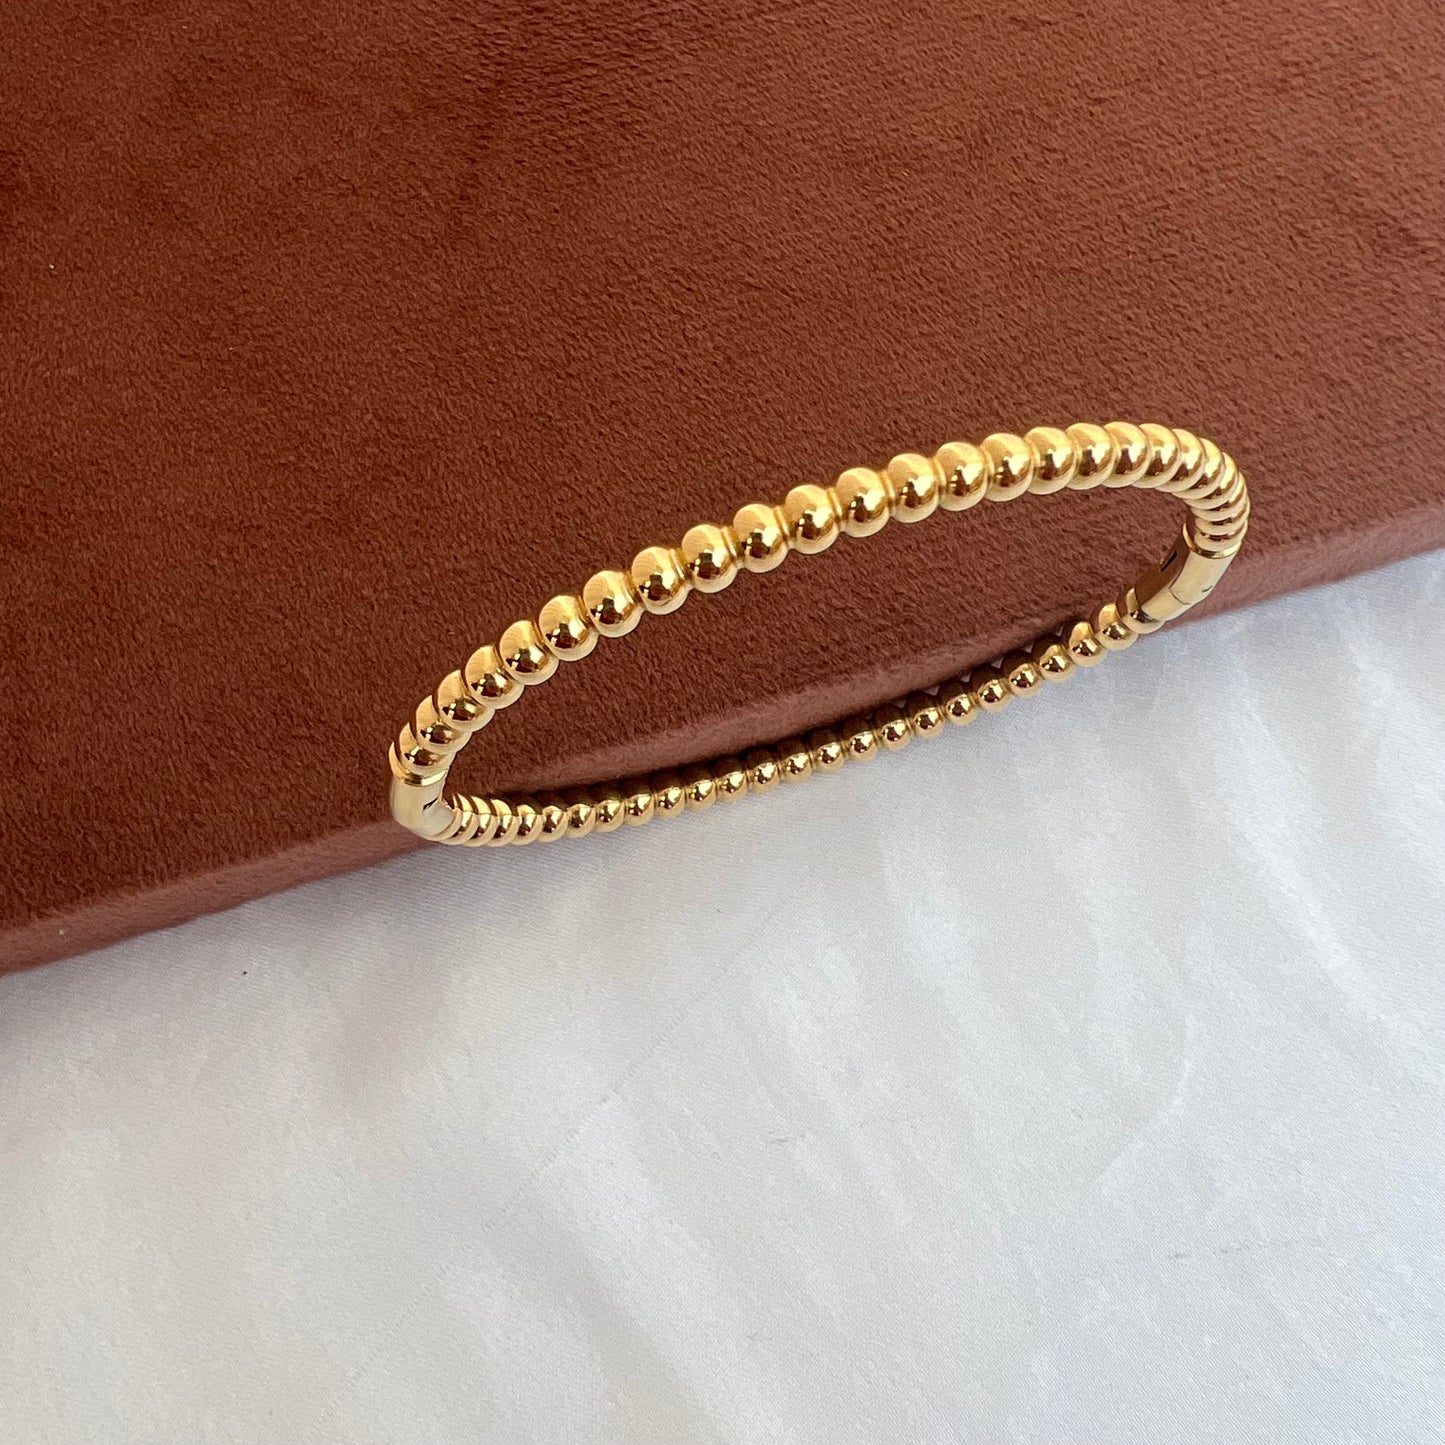 Beaded 18k Gold Plated Bracelet